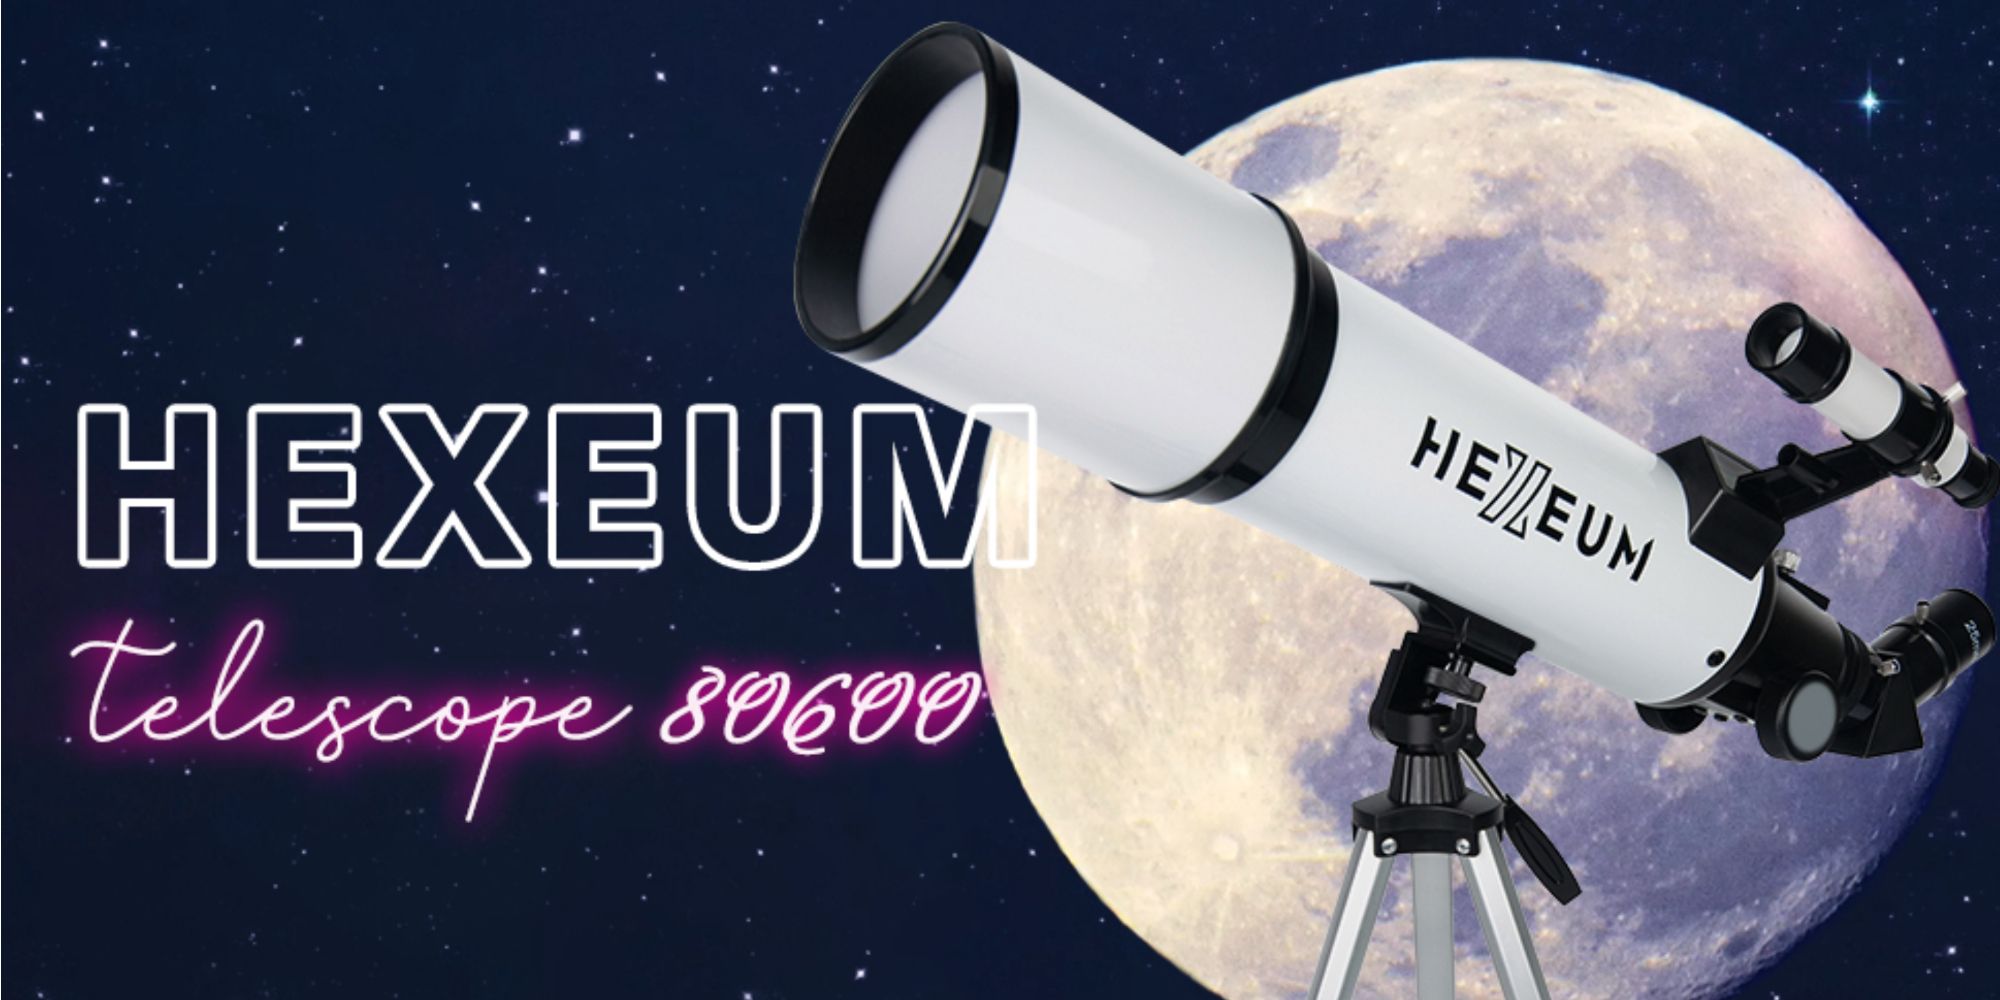 Hexeum Telescope from Amazon